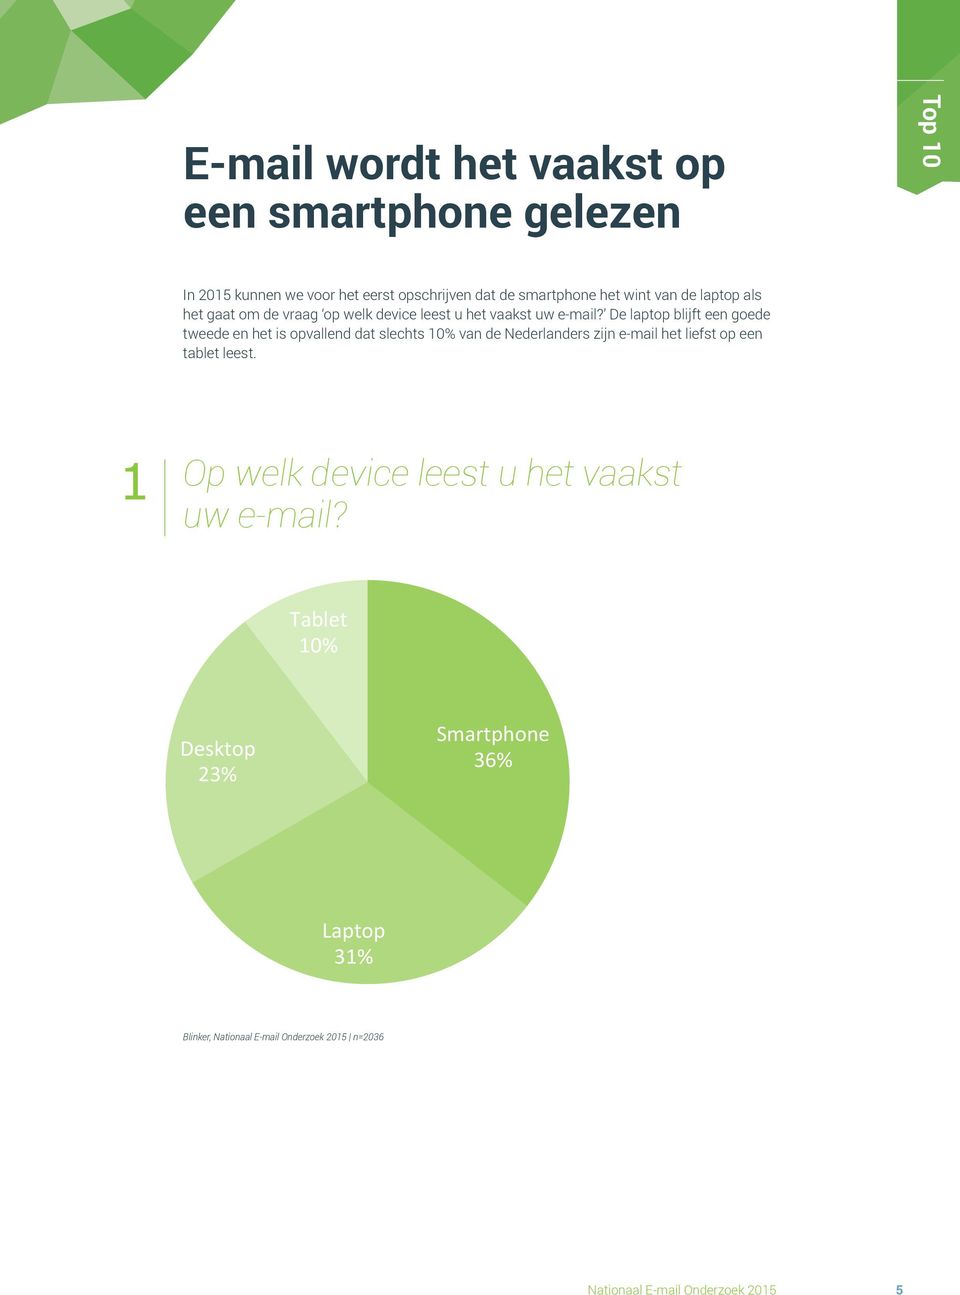 De laptop blijft een goede tweede en het is opvallend dat slechts 10% van de Nederlanders zijn e-mail het liefst